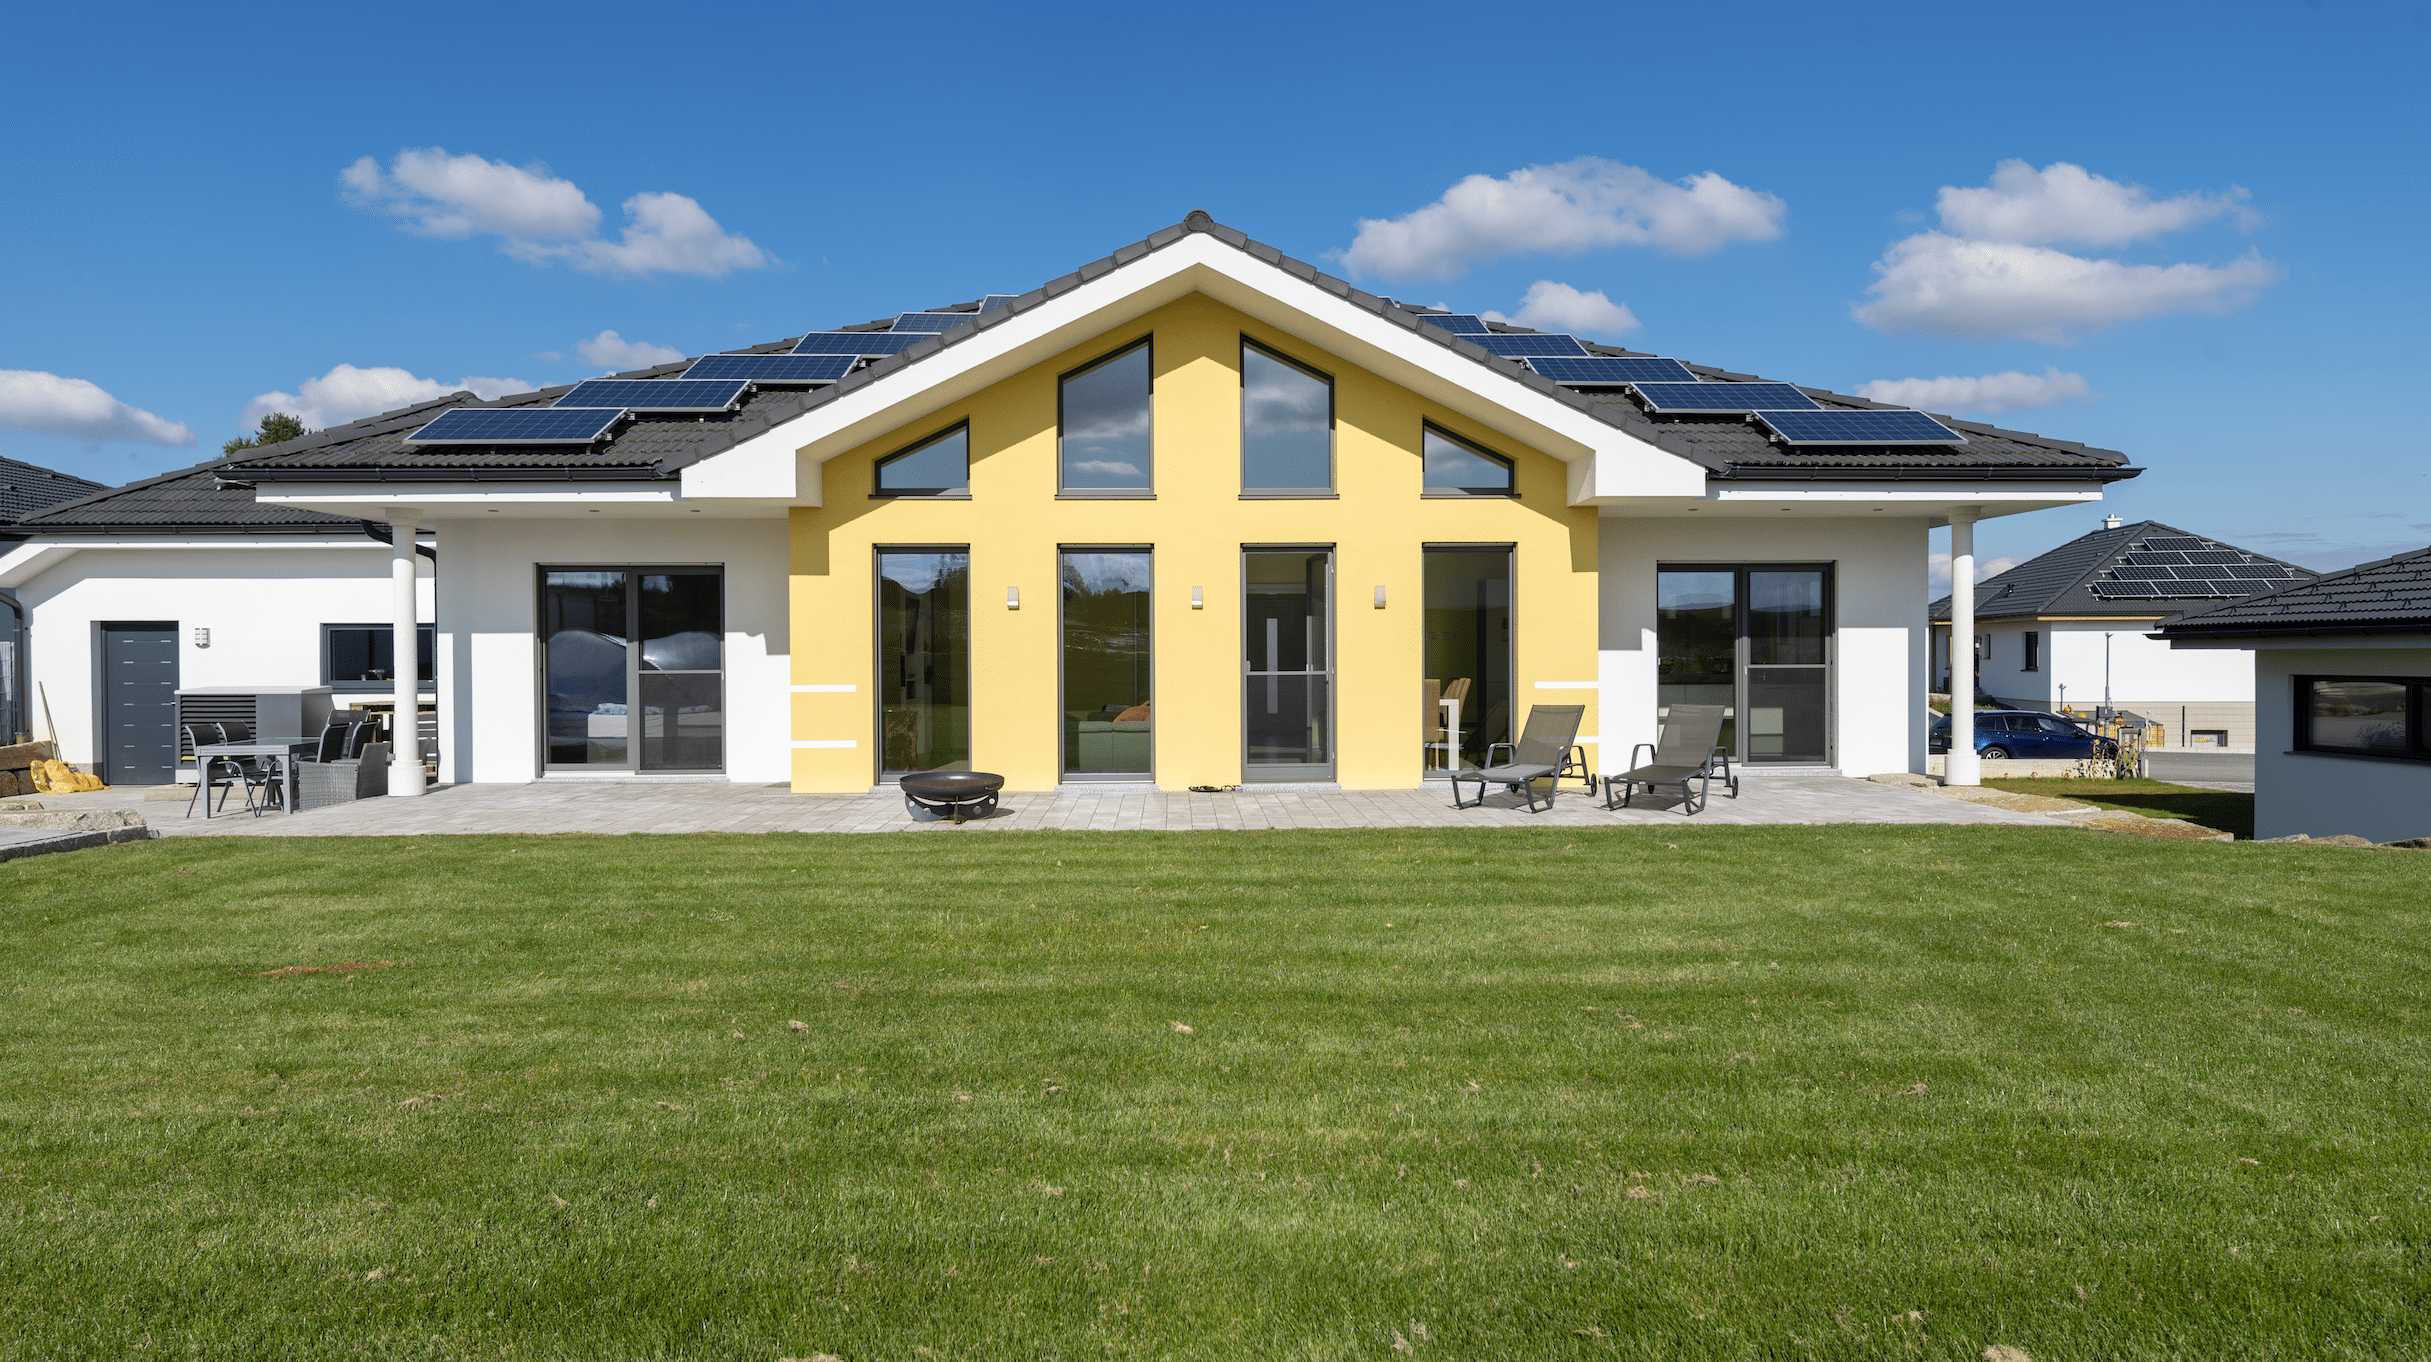 Hartl Haus zeigt ein weiß-gelbes Einfamilienhaus mit enormen Garten, Terrasse und Photovoltaikanlage am Dach.